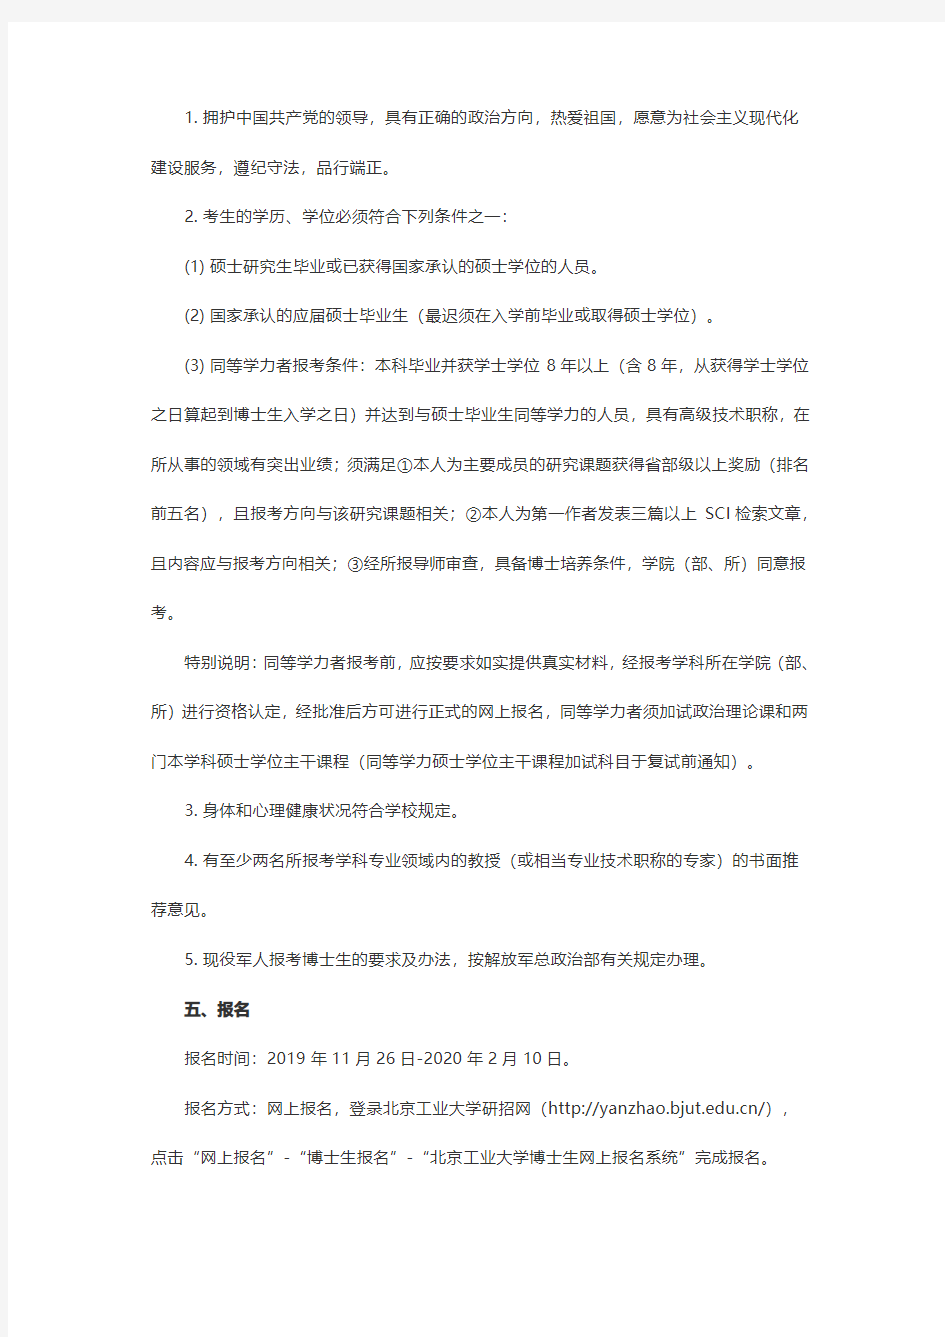 北京工业大学2020年招收攻读博士学位研究生章程